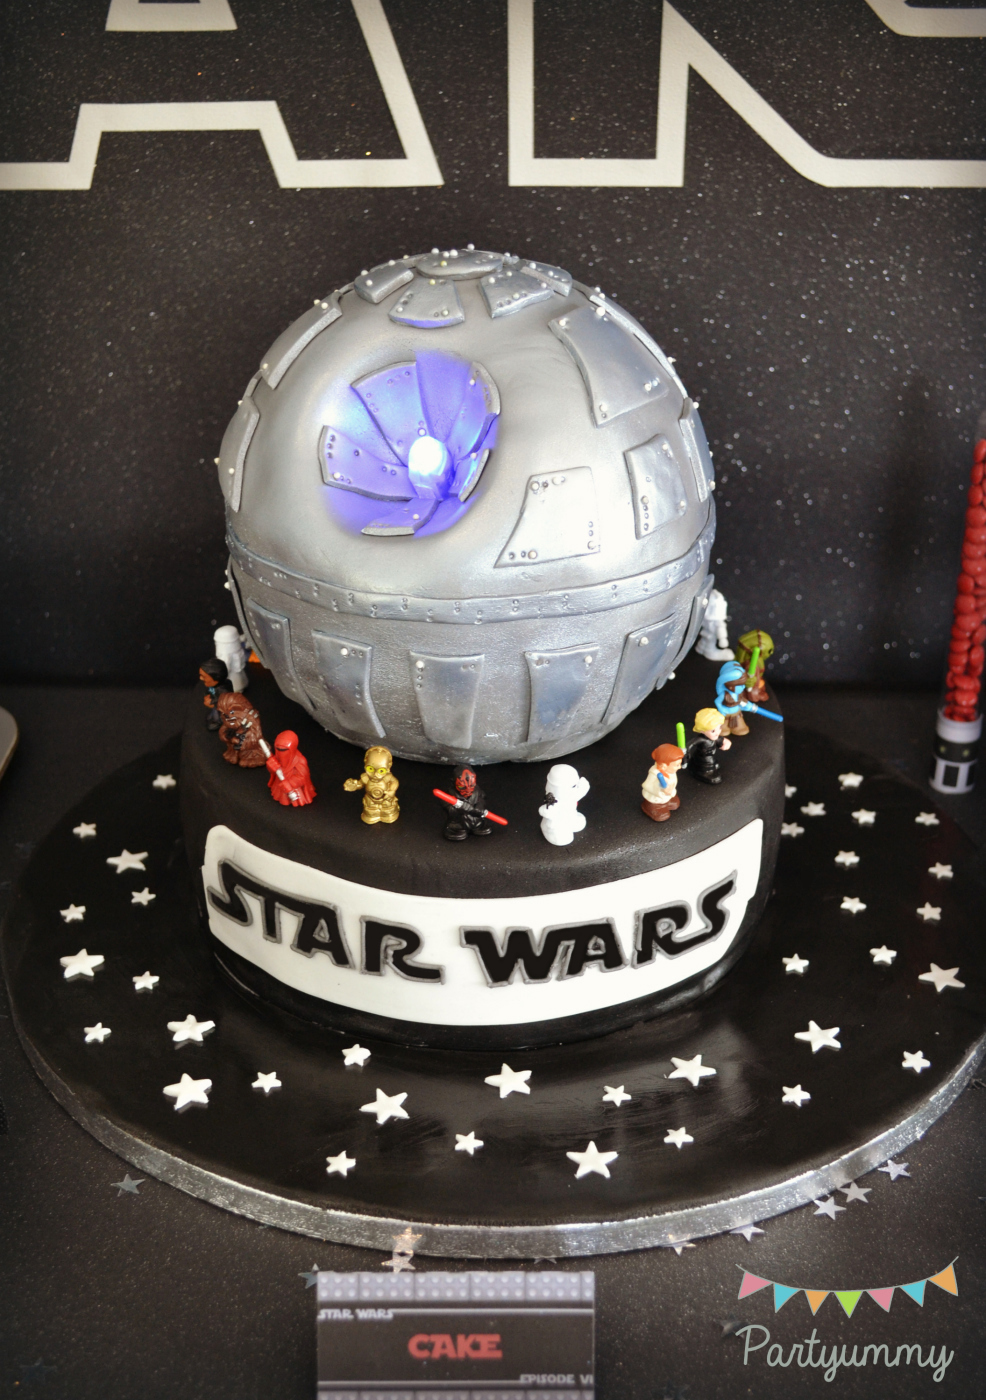 Anniversaire Star Wars sur Pinterest fête à thème Star  - gateau d anniversaire star wars